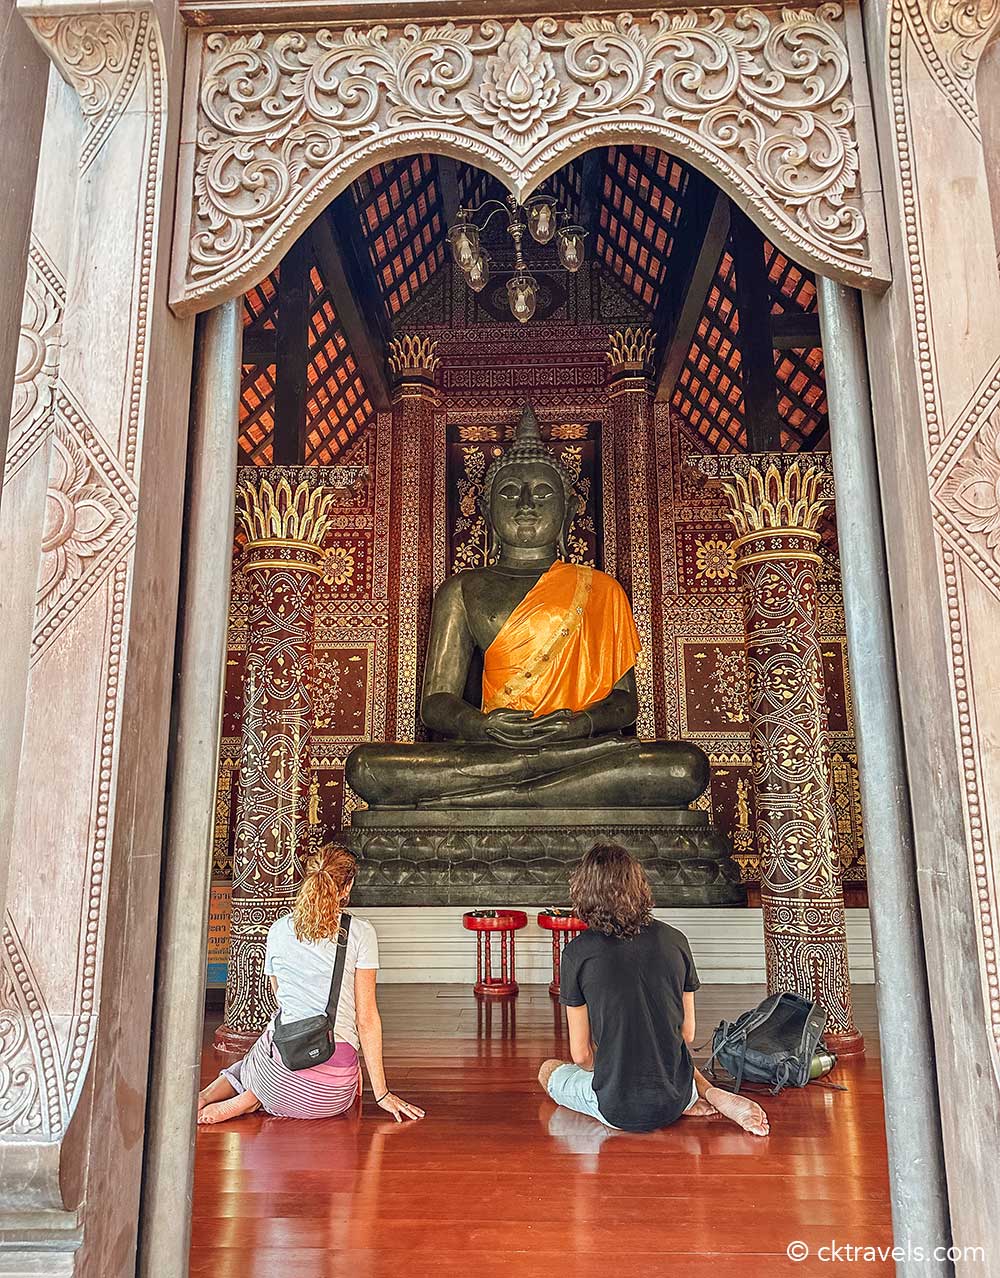 Wat Chedi Luang temple in Chiang Mai